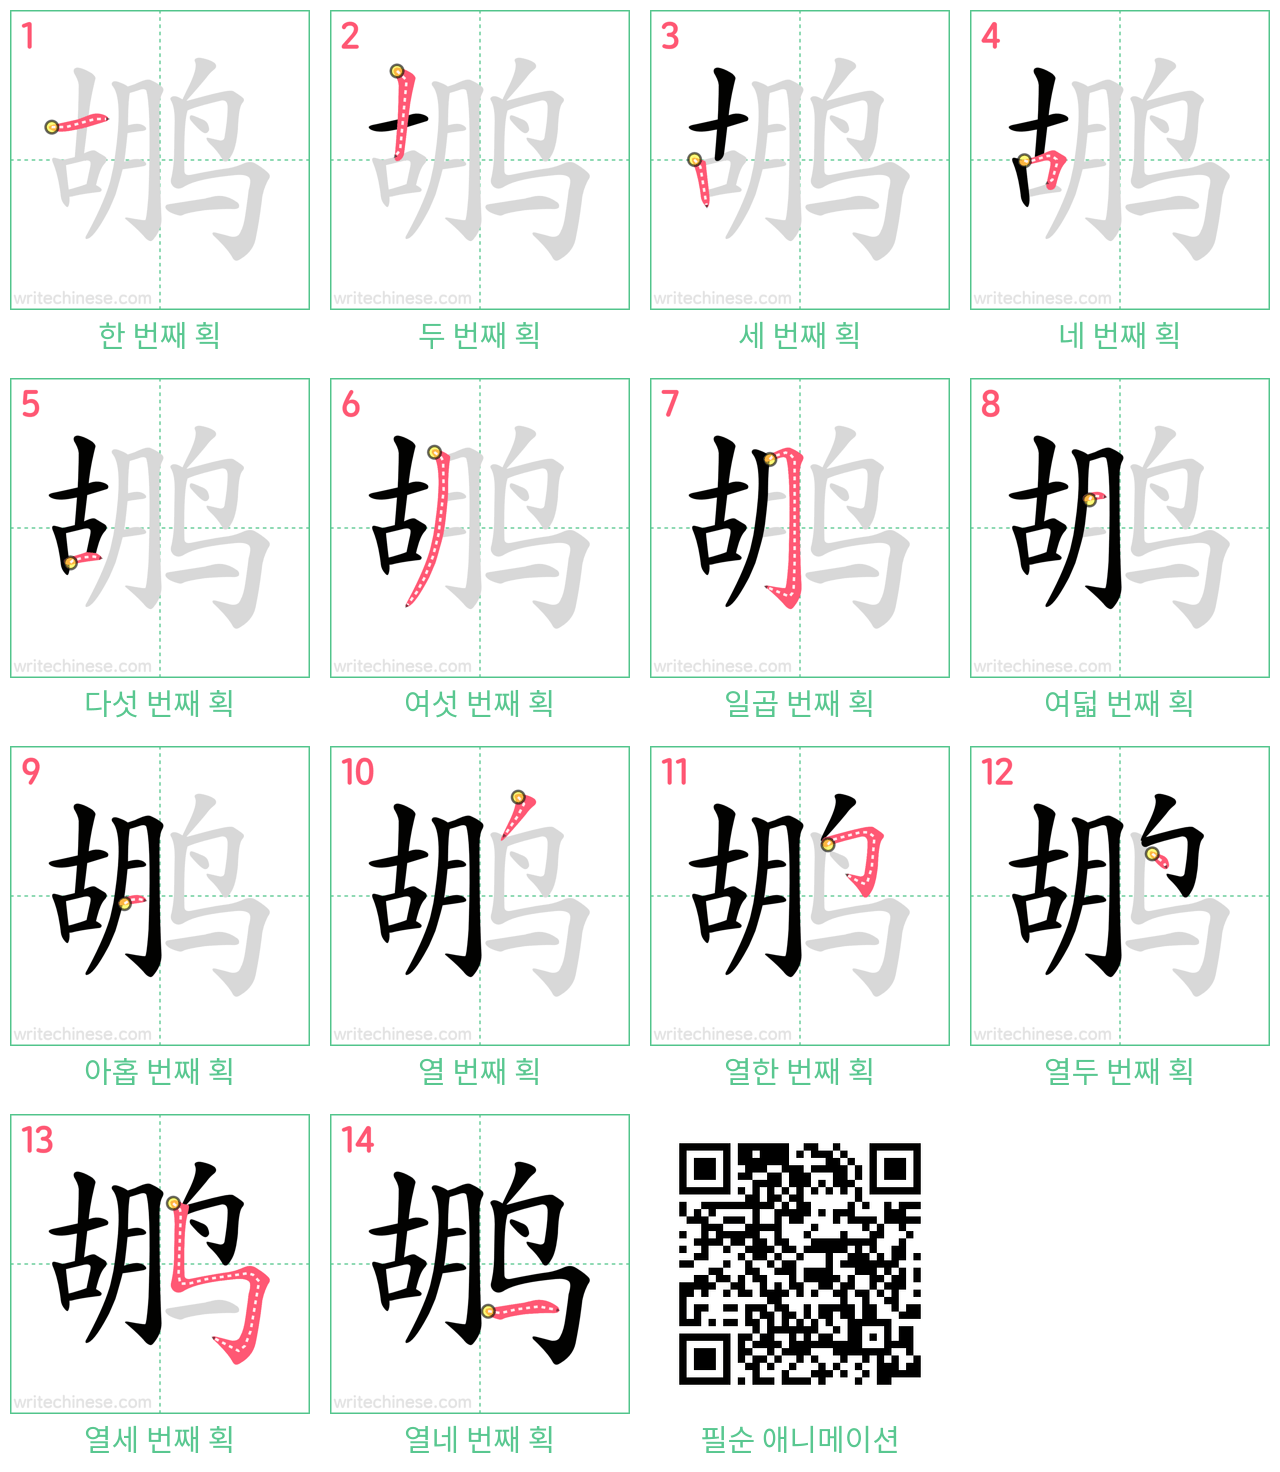 鹕 step-by-step stroke order diagrams